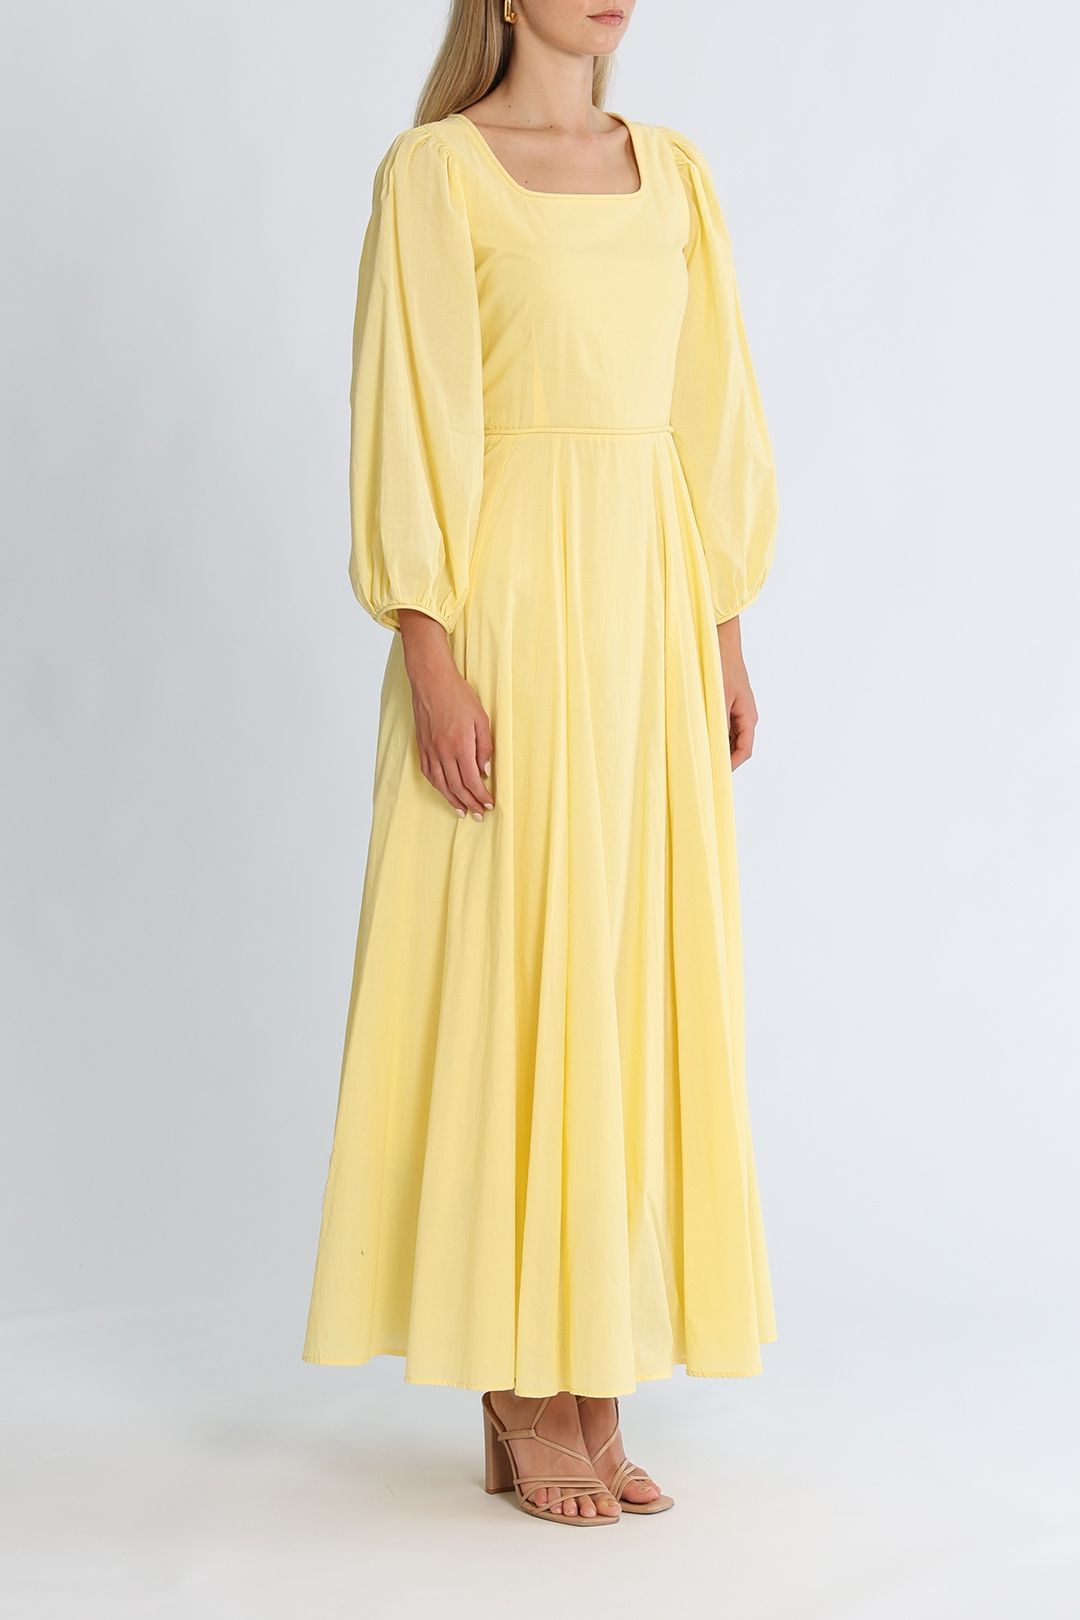 Morrison Emilia Long Sleeve Maxi Dress Lemon Flared Skirt